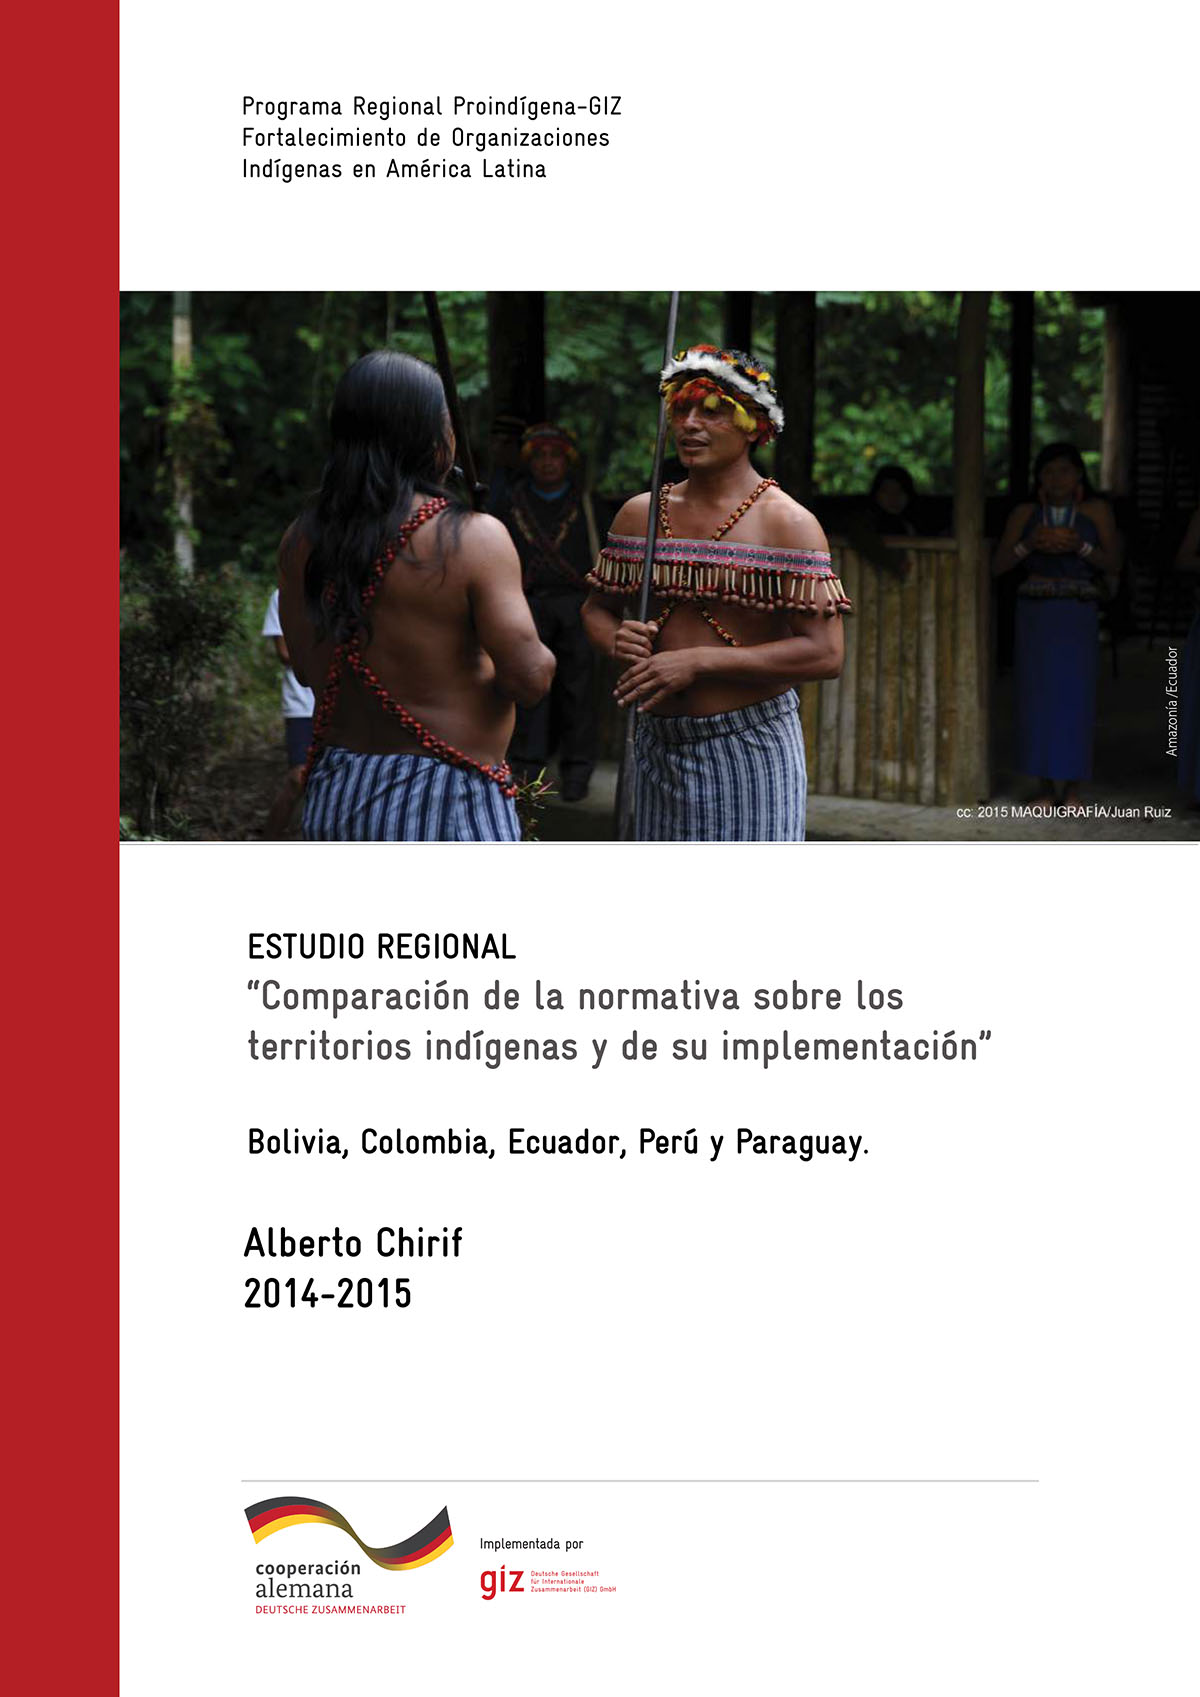 Estudio regional. Comparación de la normativa sobre los territorios indígenas y de su implementación: Bolivia, Colombia, Ecuador, Perú y Paraguay